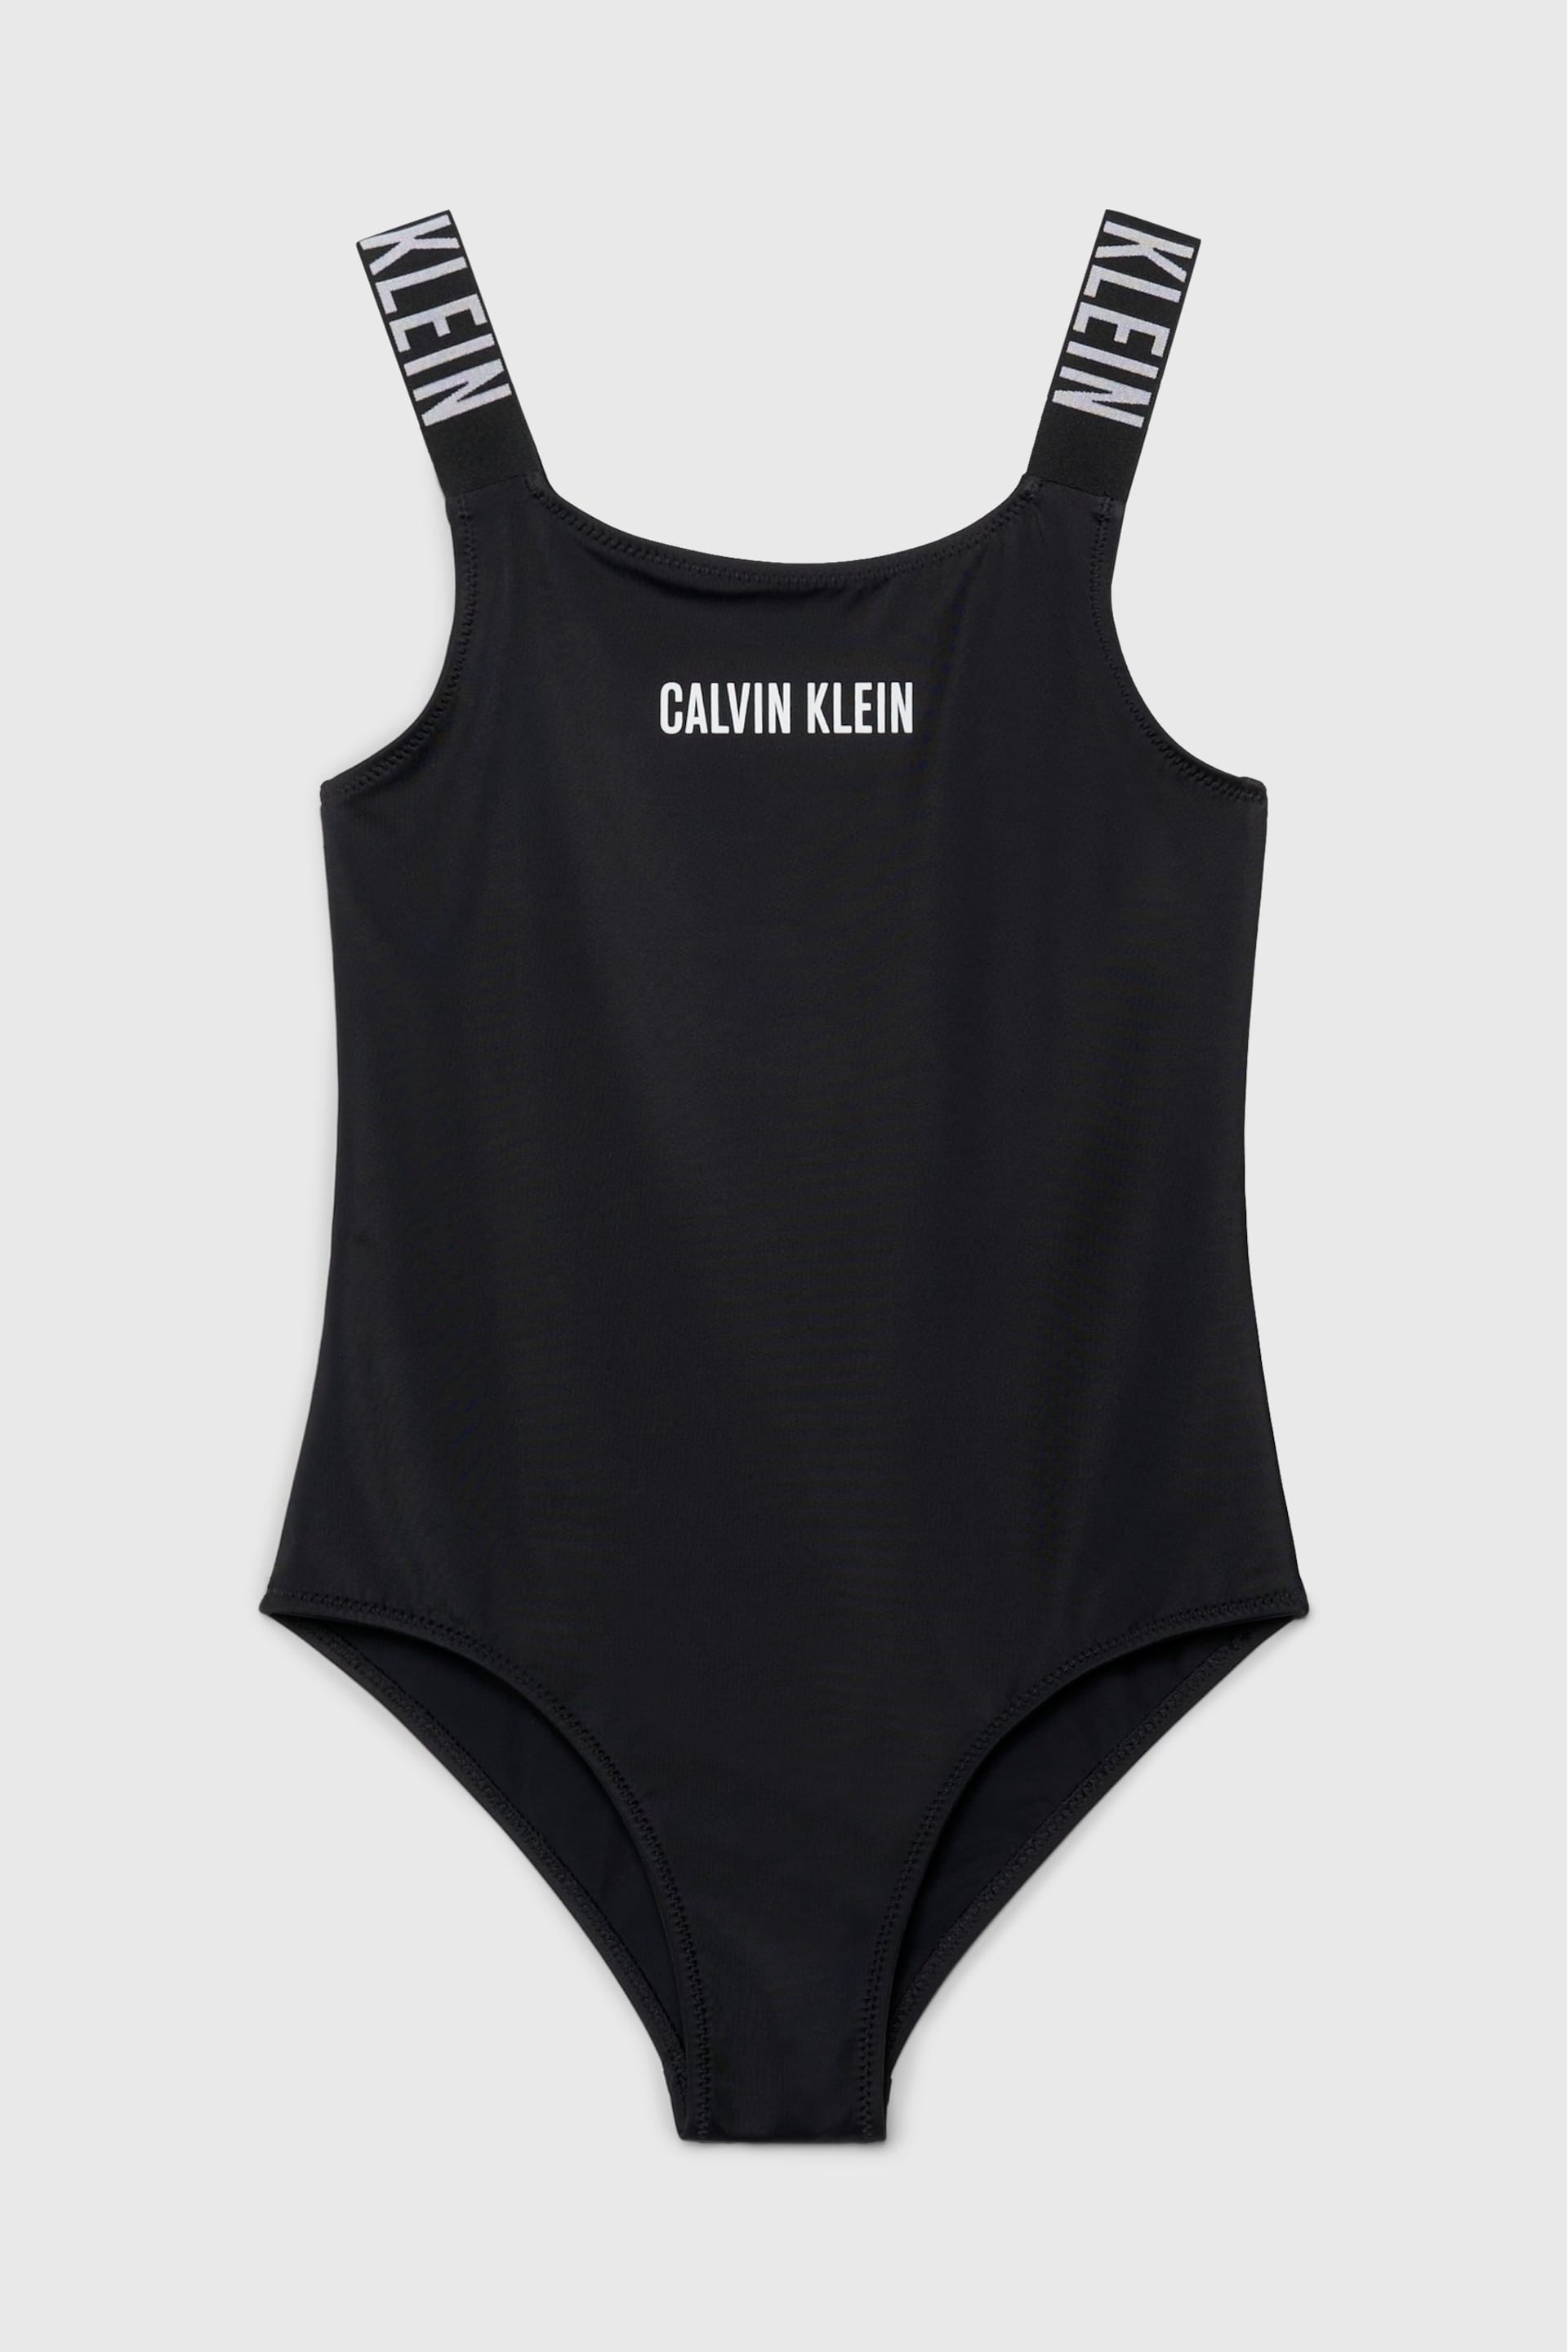 Calvin Klein Black Logo Sport Swimsuit - Image 1 of 2